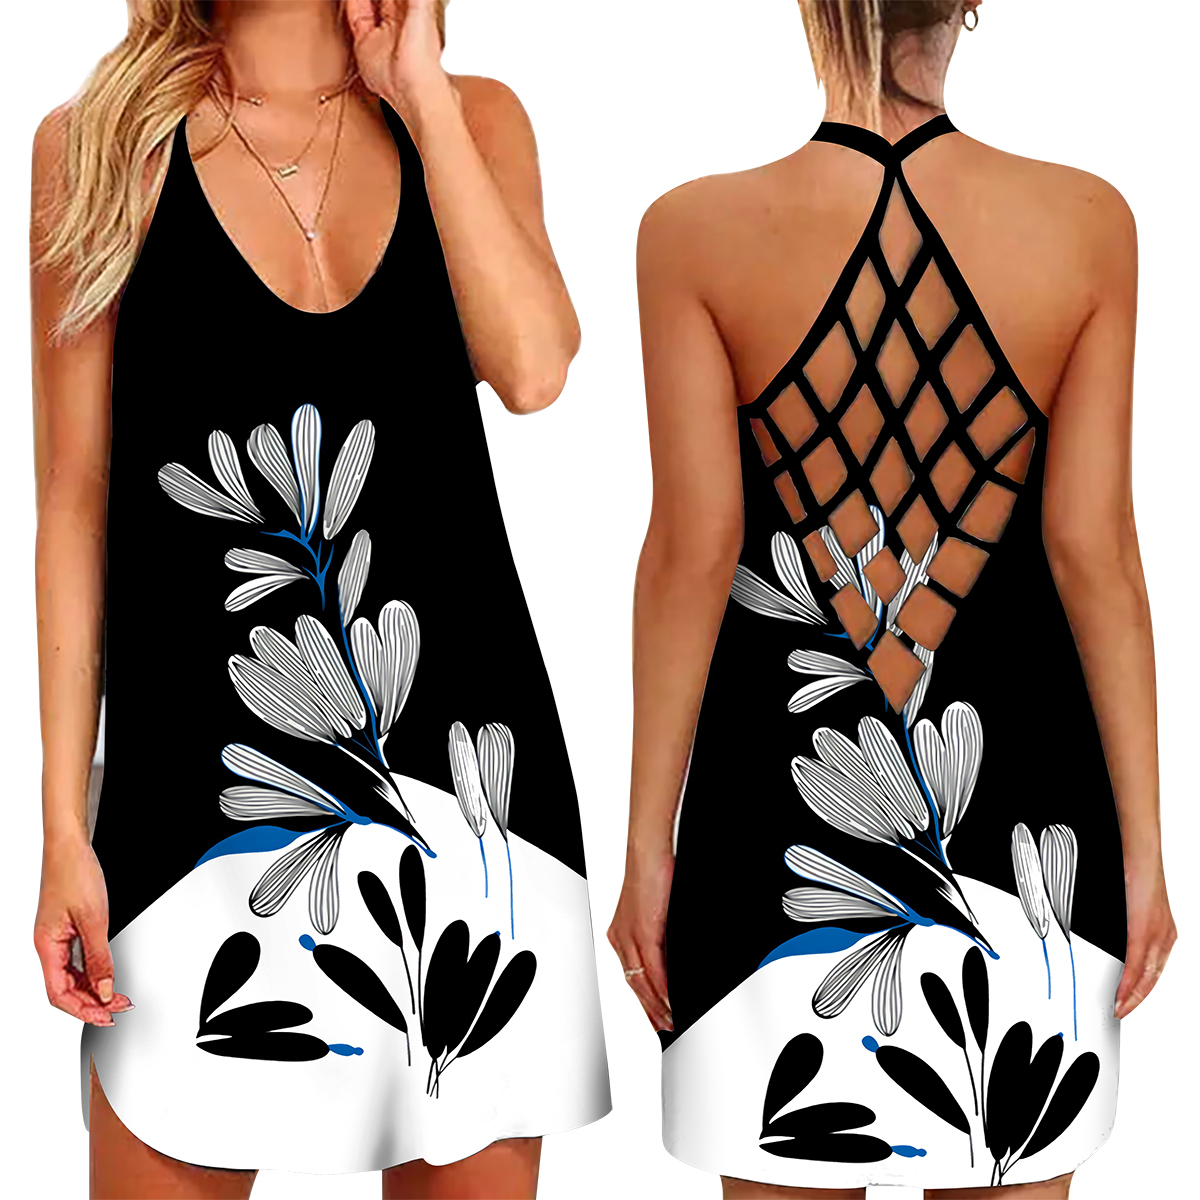 Women Summer Dress 3D Floral Print Sleeveless Beach Miniskirt Hollow Out Back Suspender Colorful Sundress Dresses For Women alx